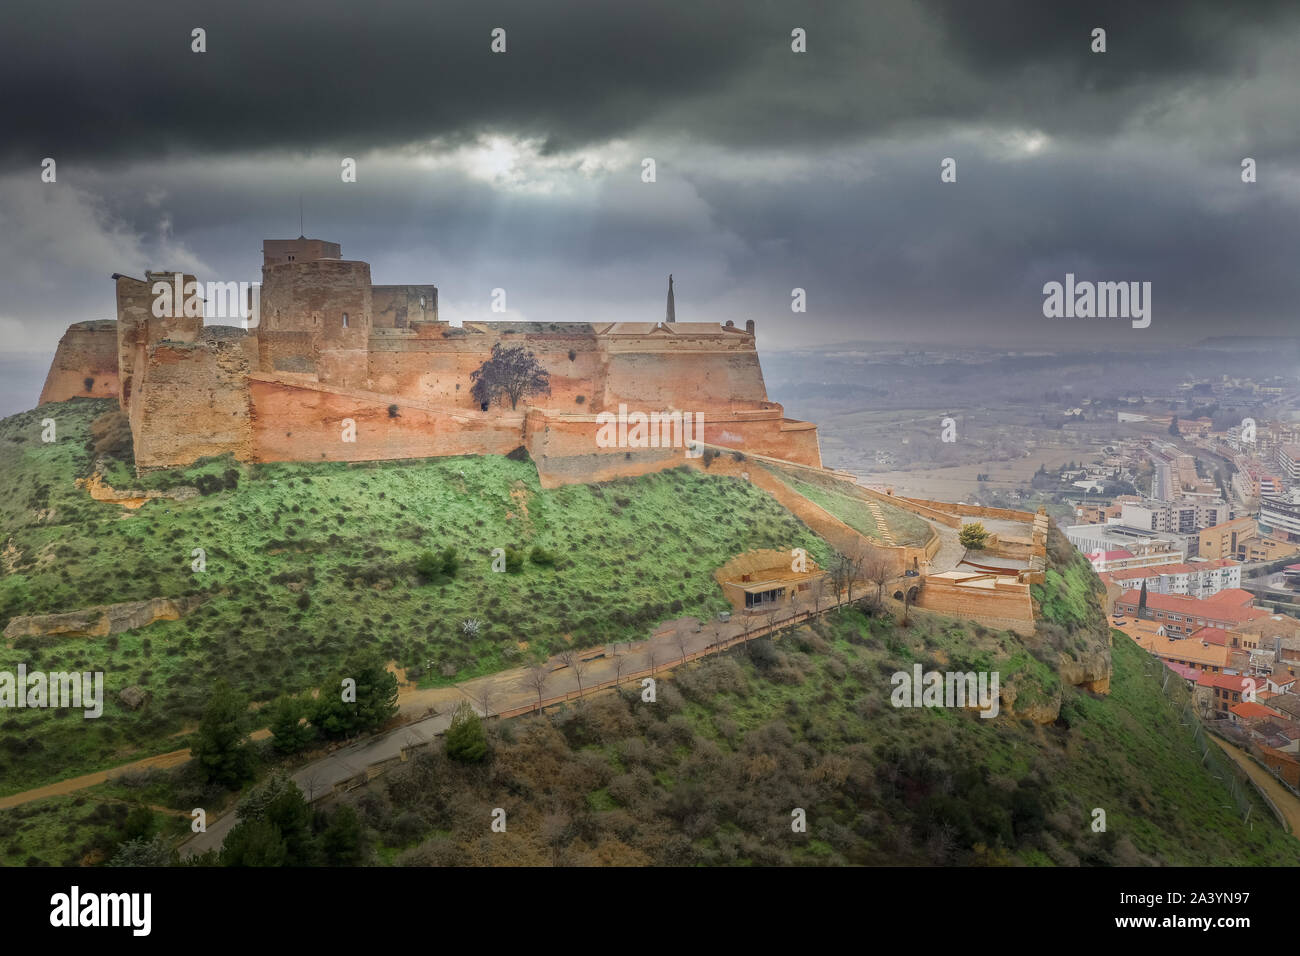 Vue aérienne de la forteresse de Monzon un ancien château chevalier Templer avec origines arabes dans la région de l''Aragon Espagne Banque D'Images